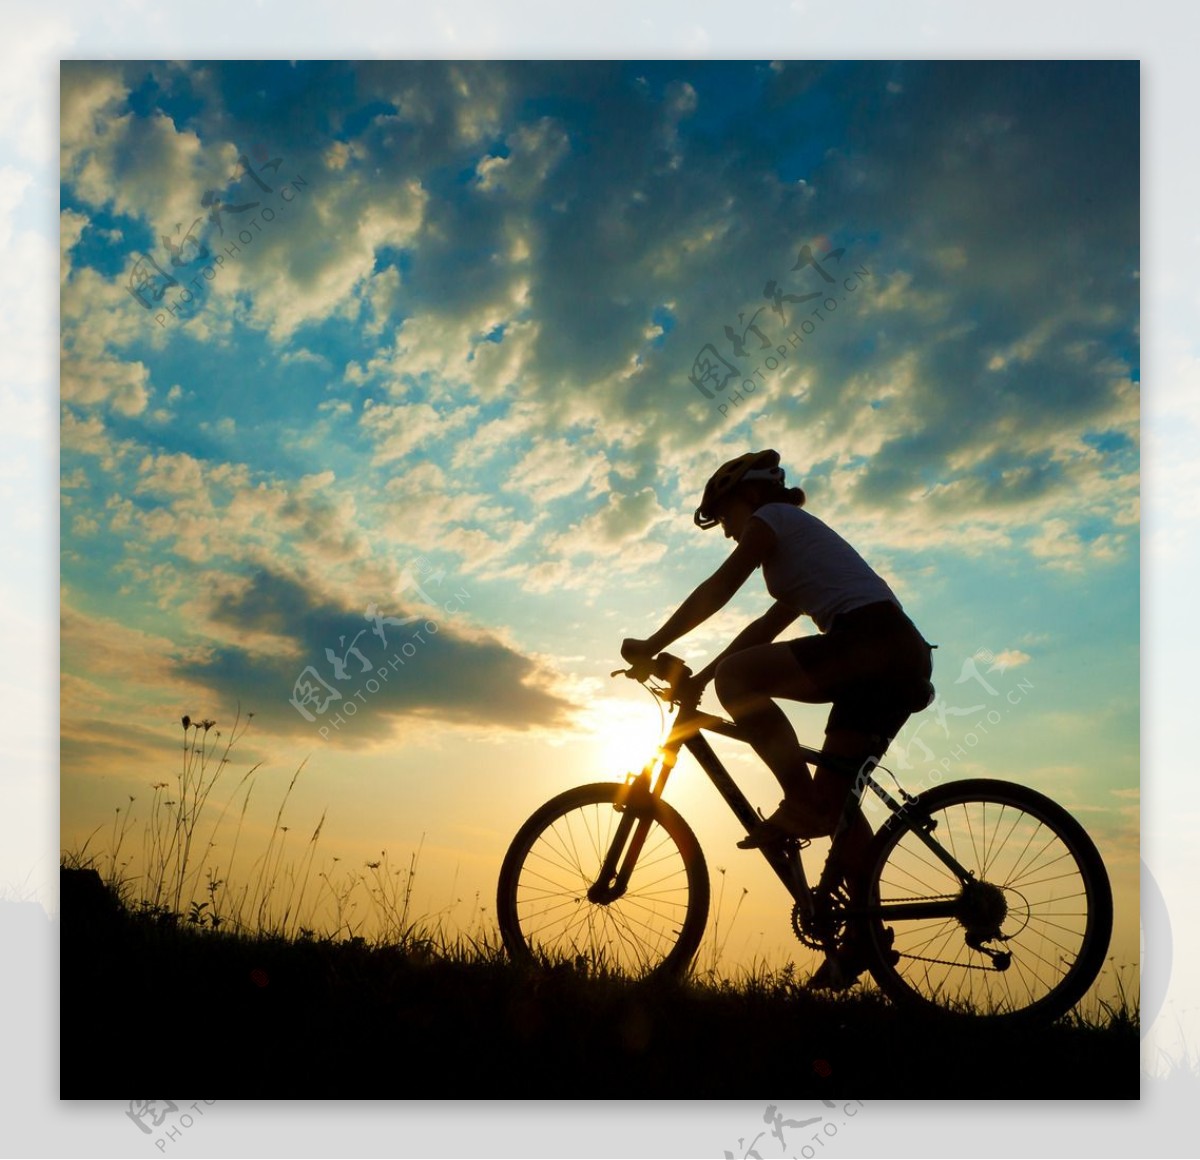 单车自行车主题摄影宽屏壁纸-1280x800下载 | 10wallpaper.com